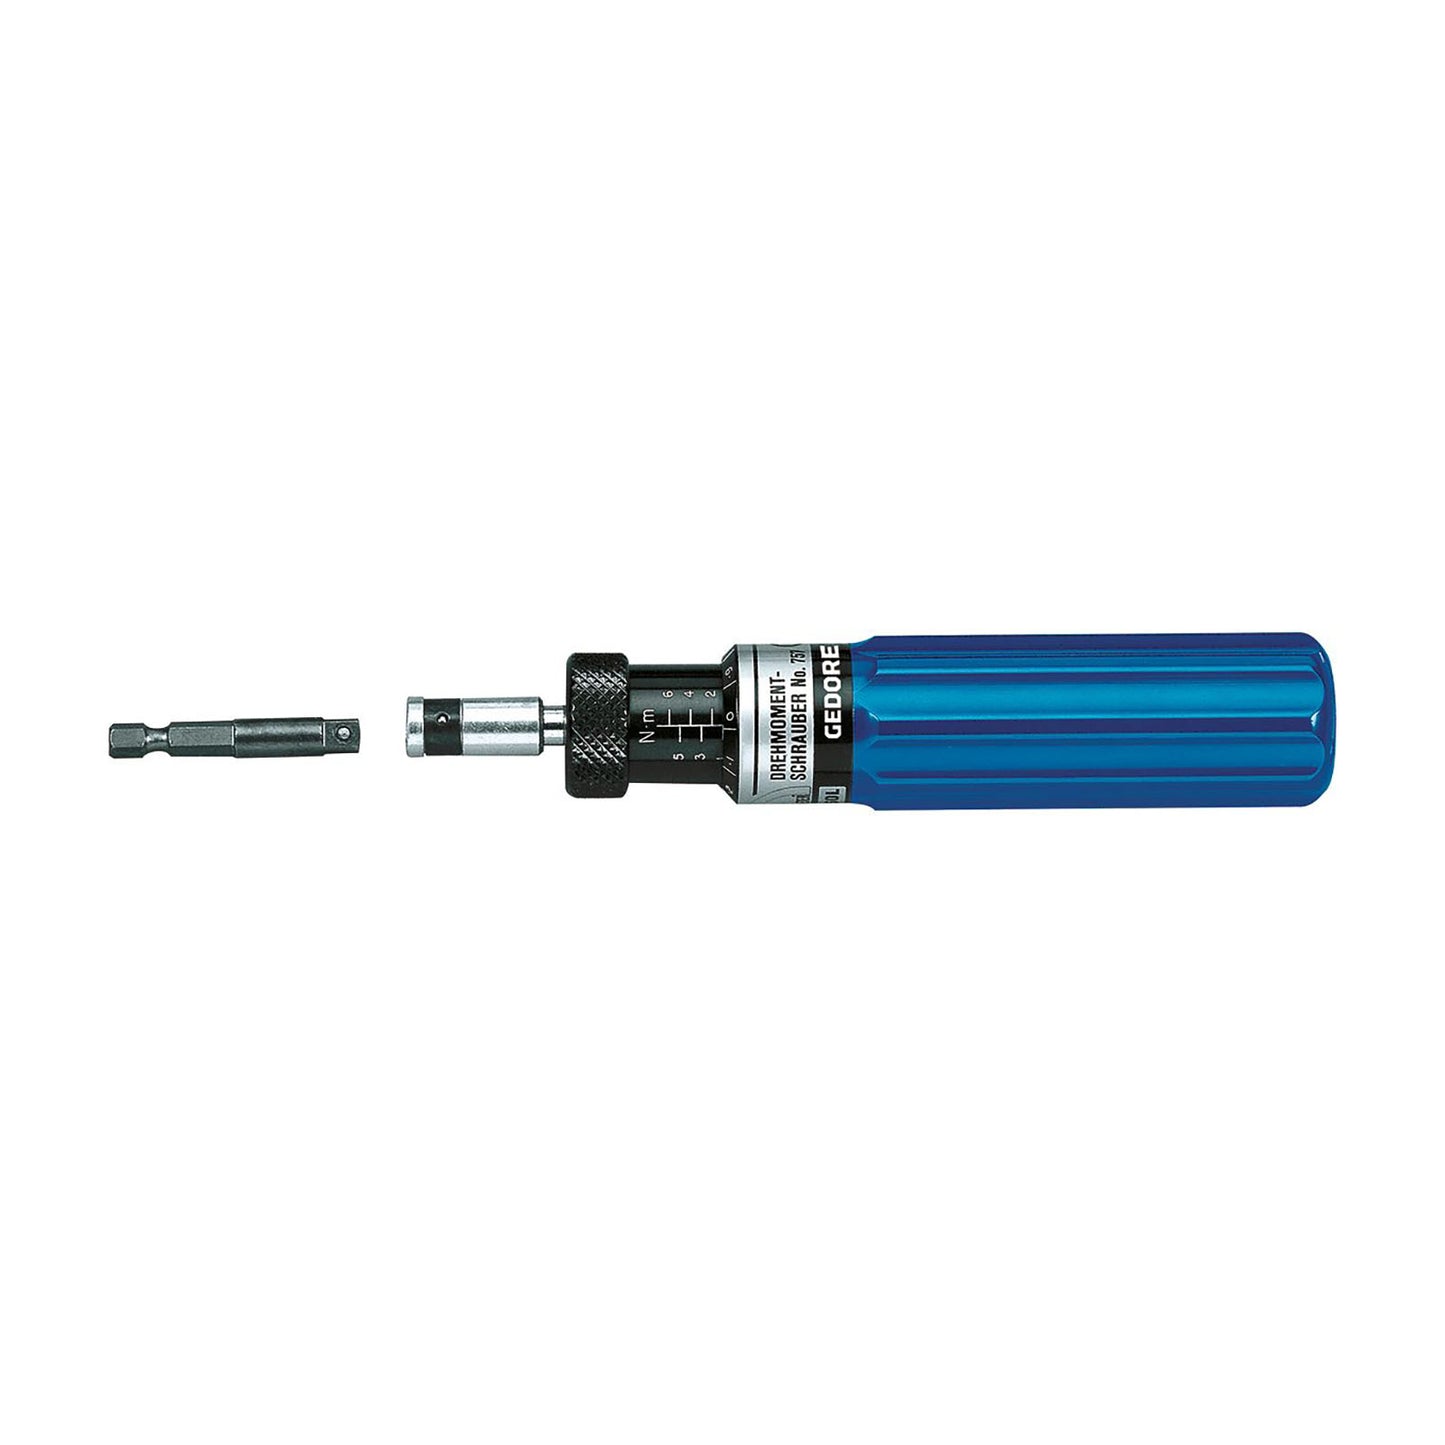 Gedore 757-06 - S 1/4" 1-6 Nm dynamometric screwdriver